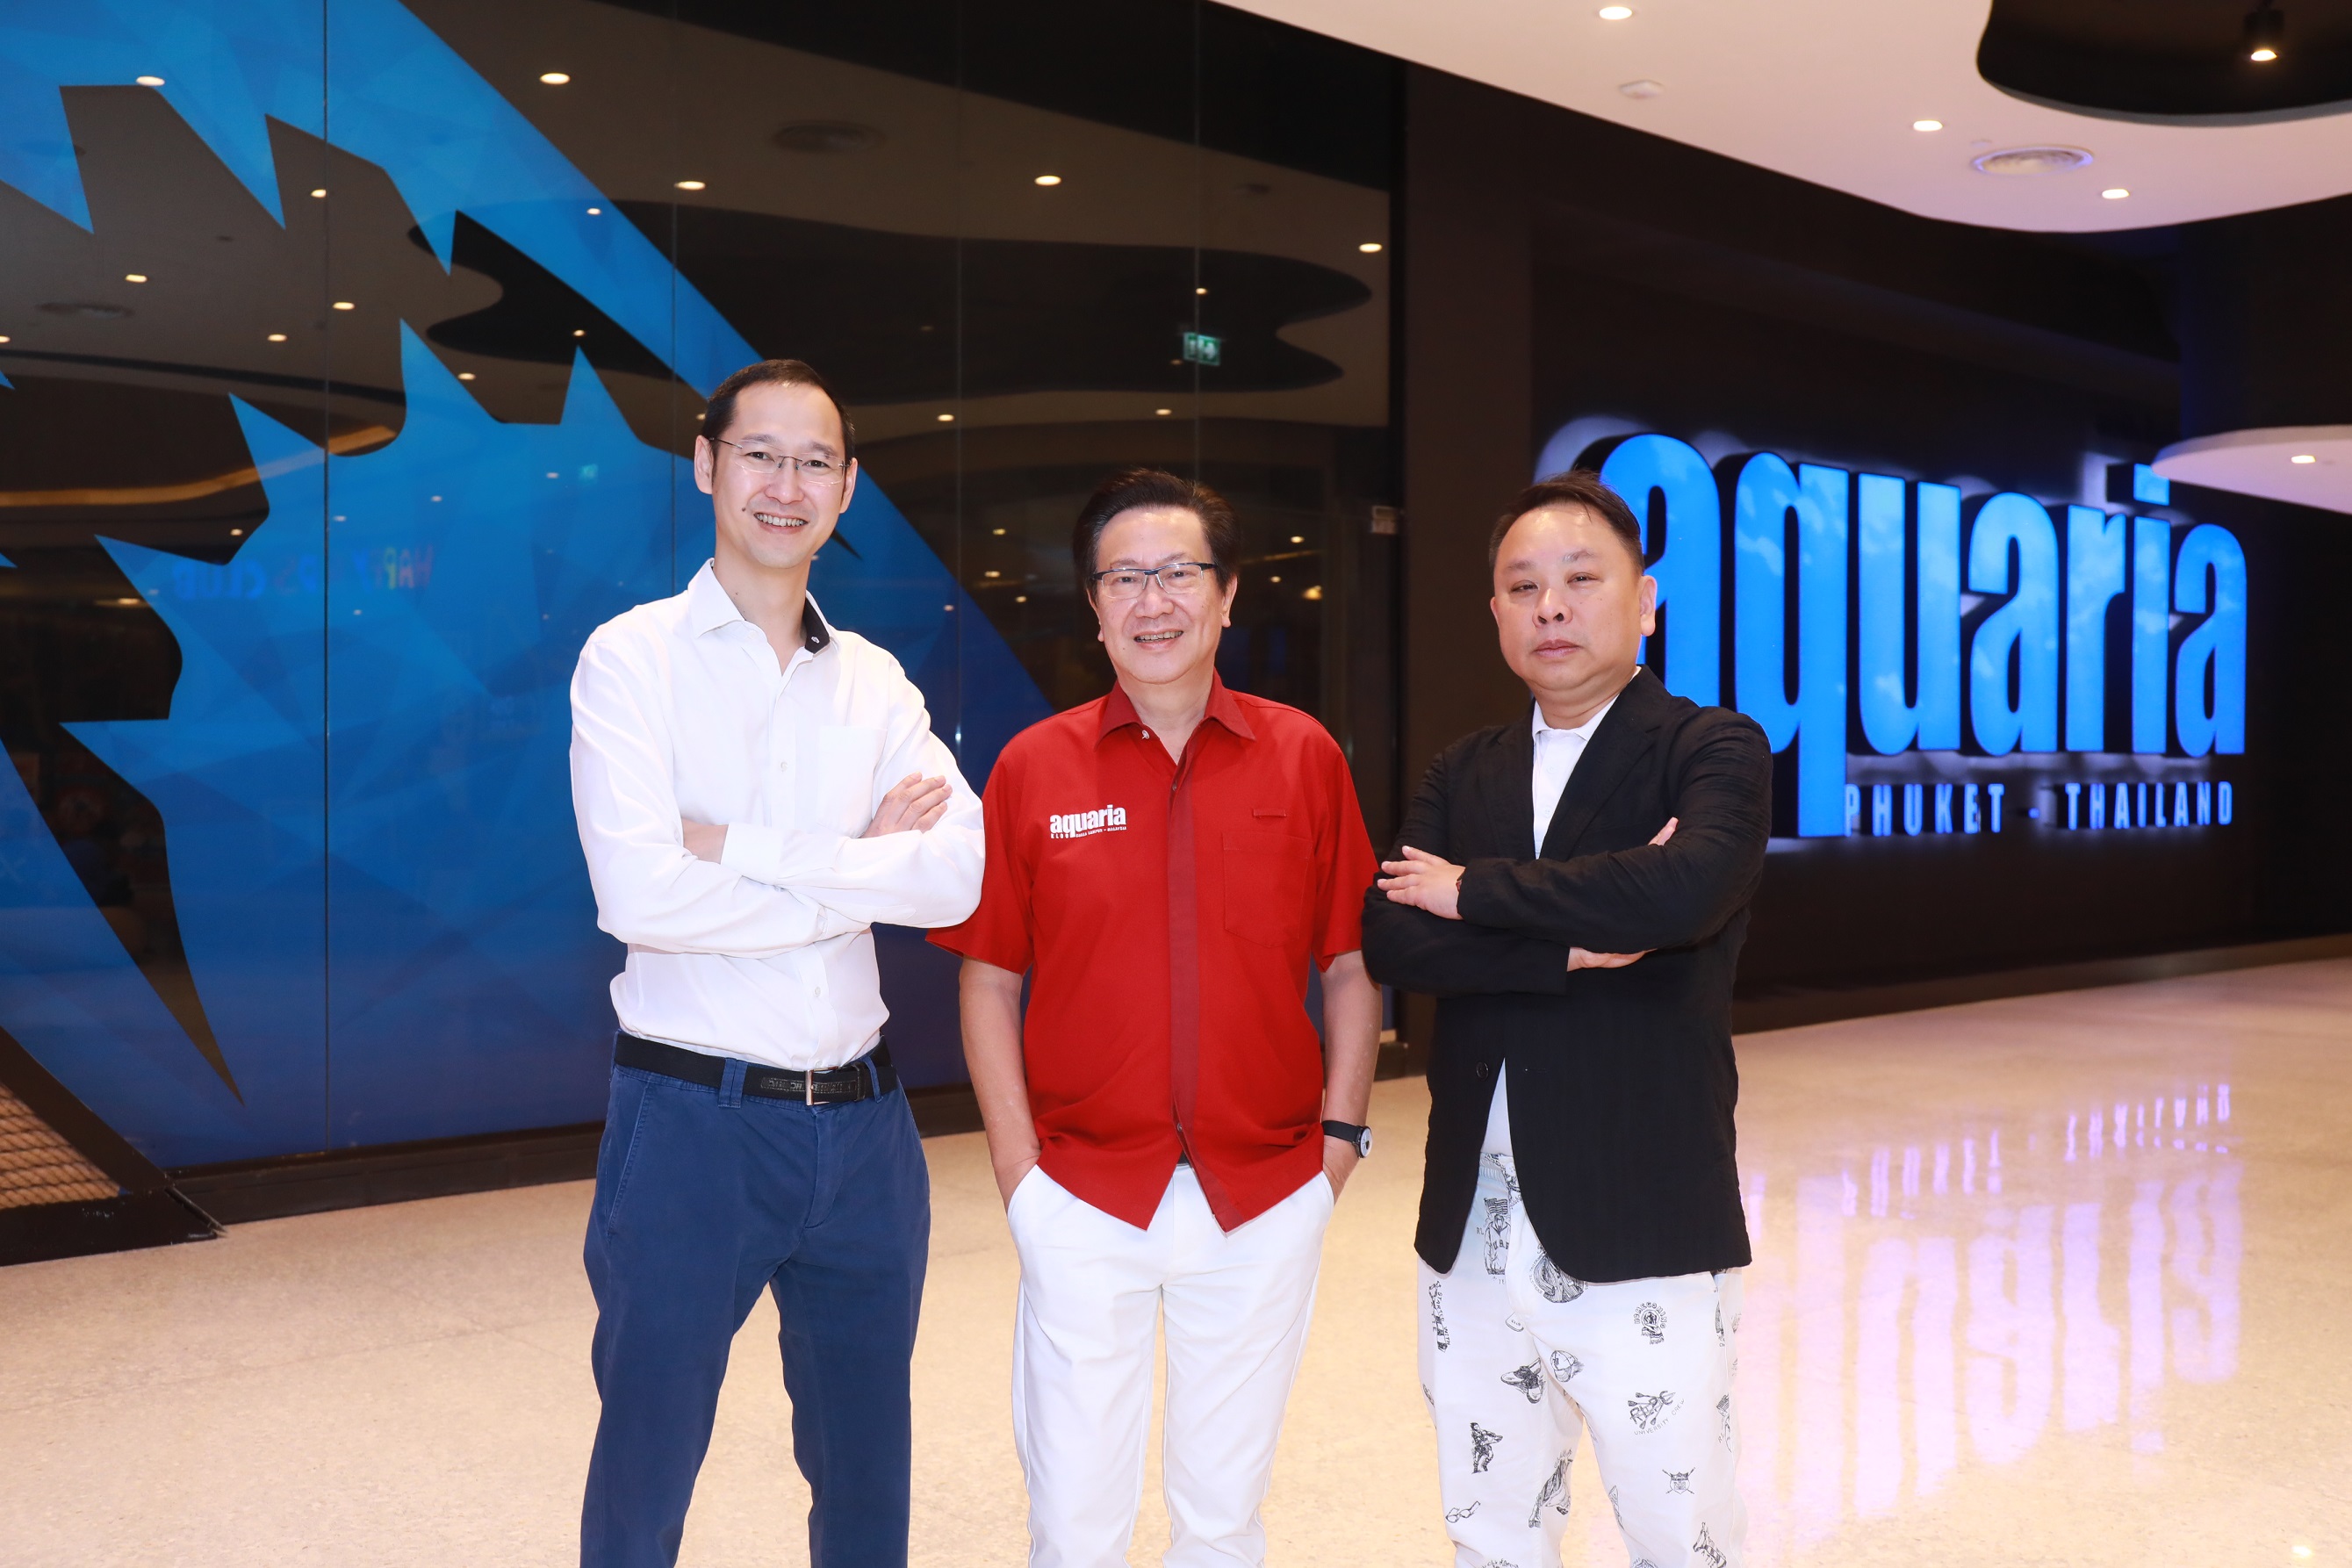 เปิดแล้ว ‘AQUARIA Phuket’ อควาเรียมโมเดลใหม่ครั้งแรกและใหญ่ที่สุดในไทย และ ‘ANDASI’ ร้านอาหารใต้น้ำที่ใหญ่ที่สุดในโลก